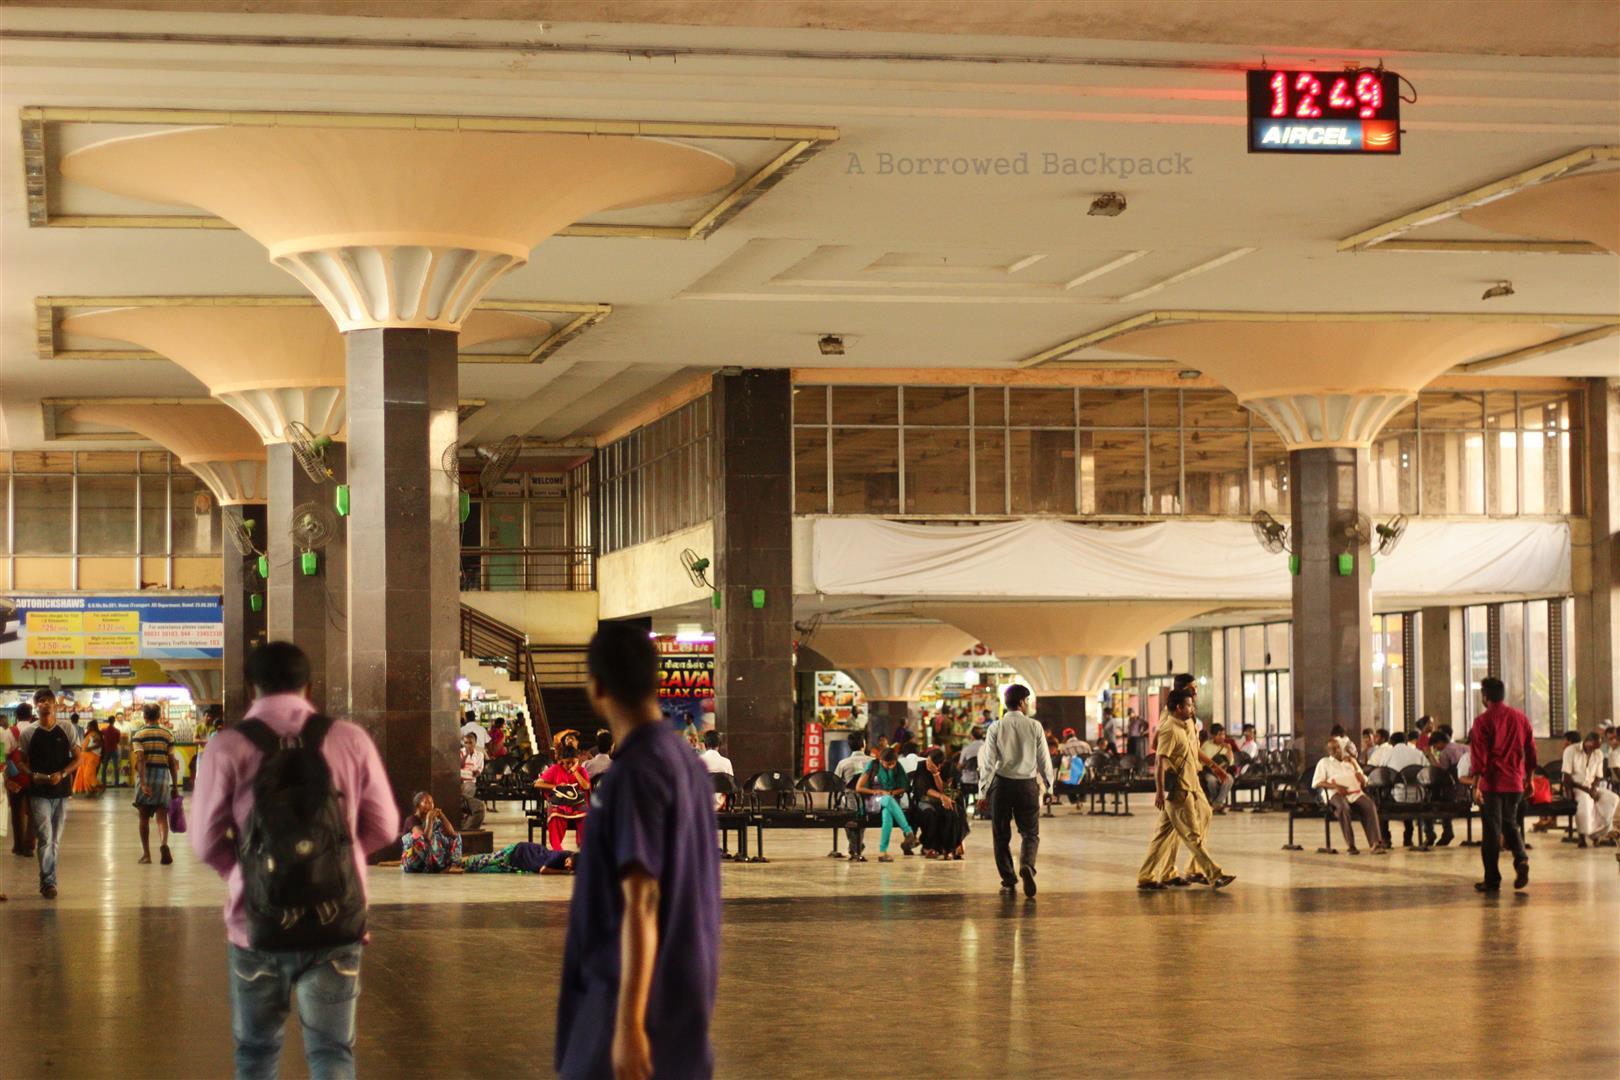 Chennai bus station